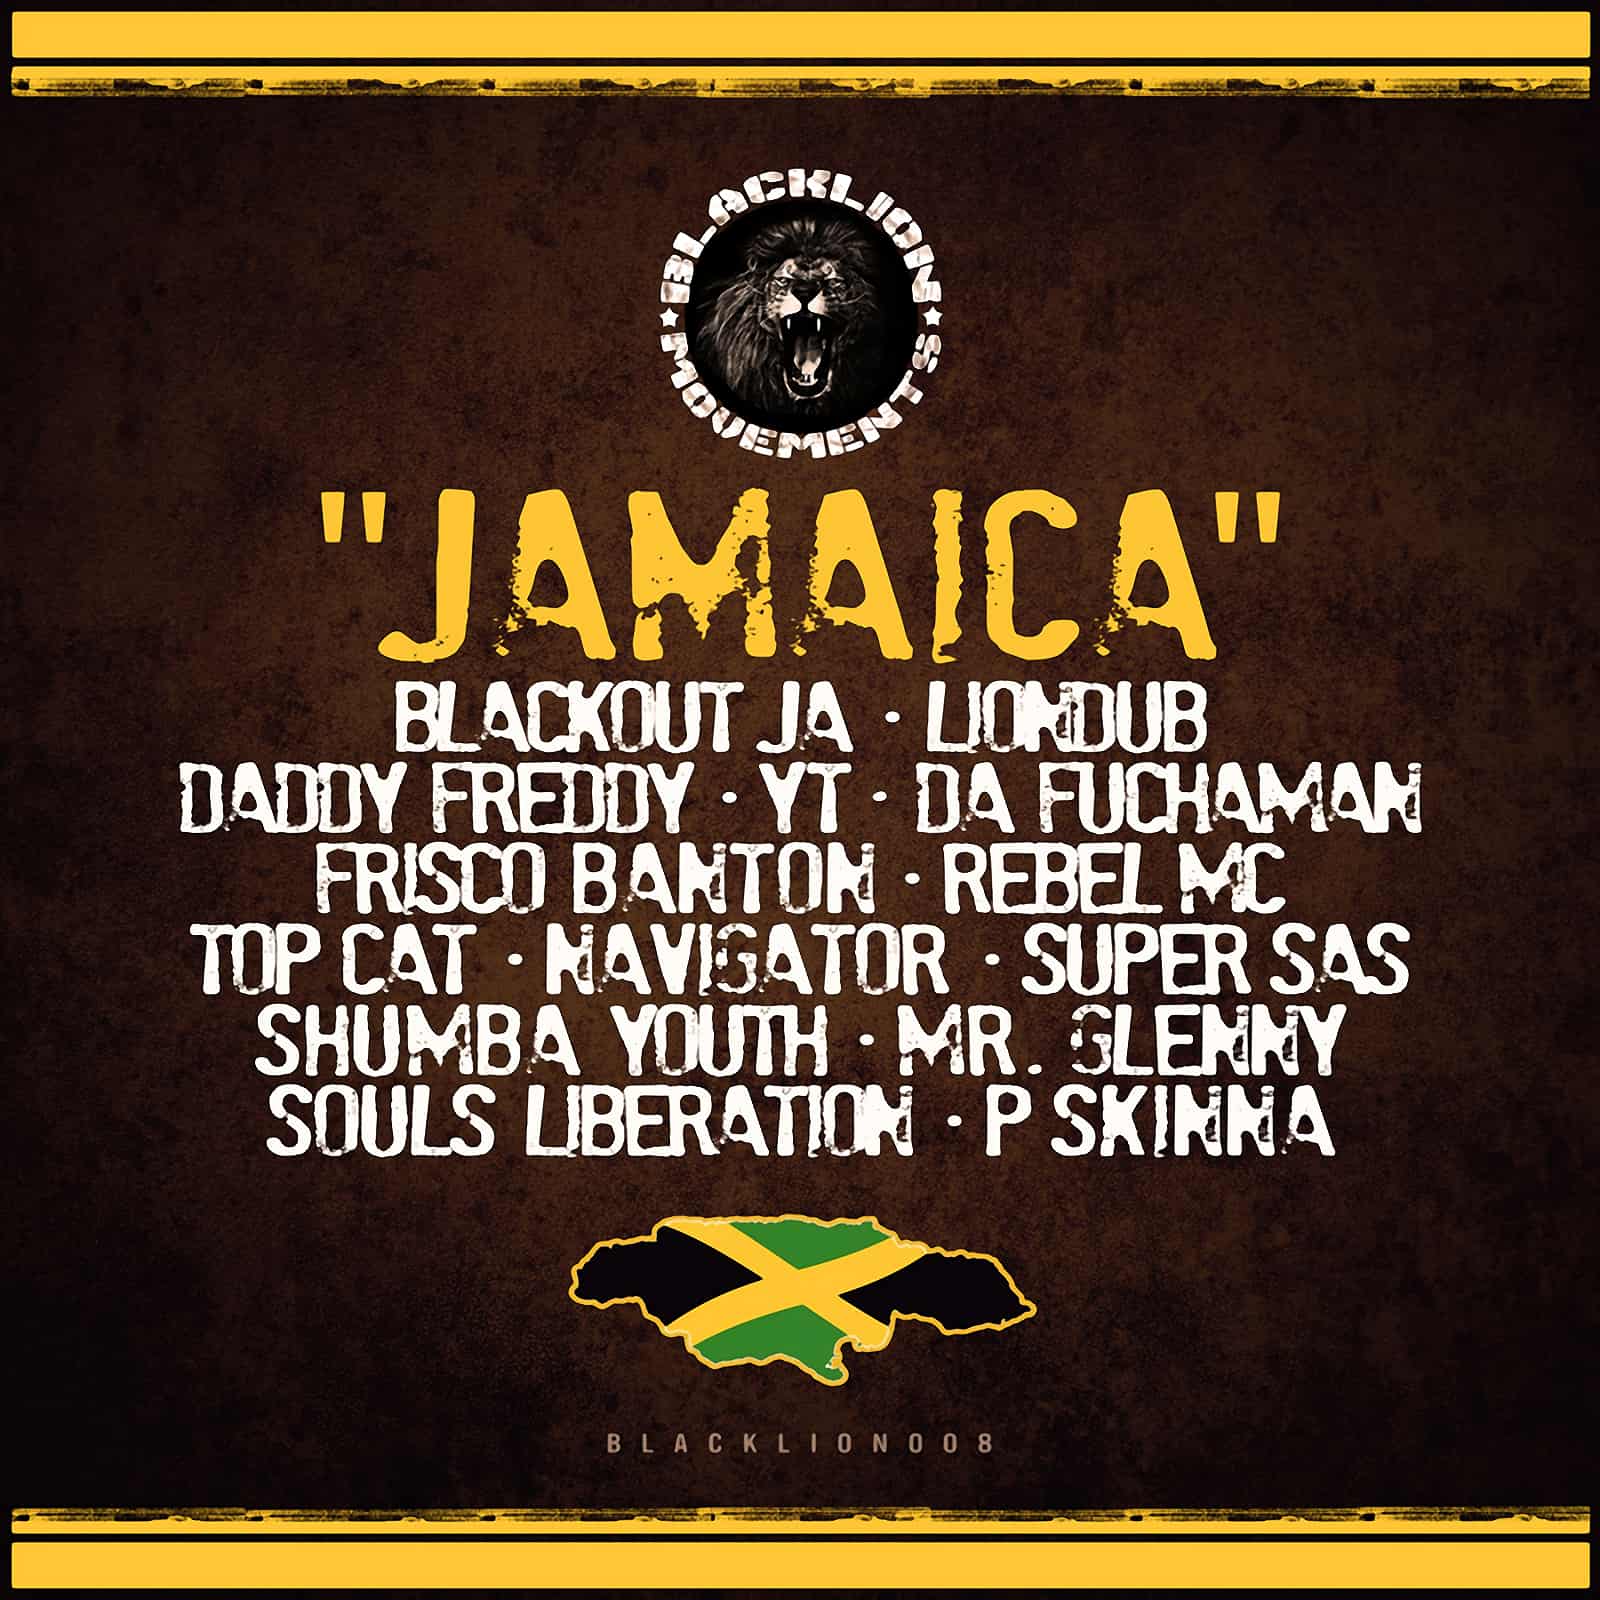 Blackout JA, Liondub, P Skinna - Jamaica